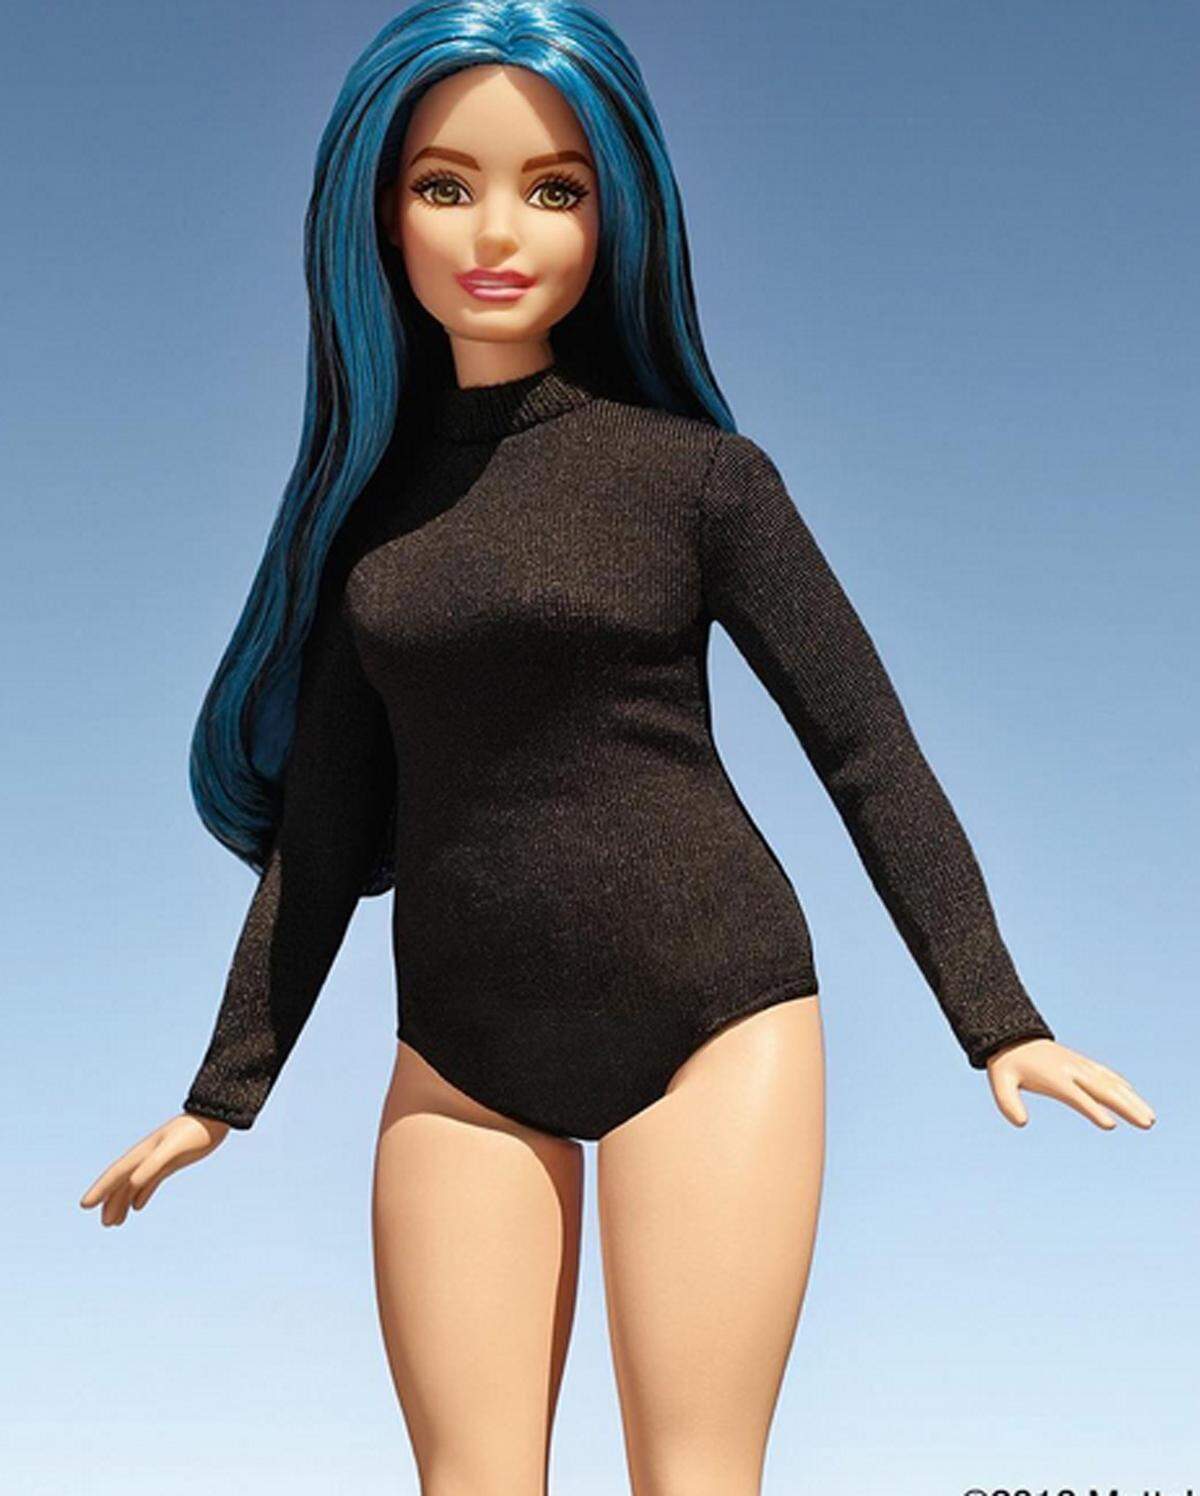 Die einst sehr schlanke Barbie gab es seitdem zusätzlich in den Figurtypen "kurvig", "klein" und "groß". Ebenso stand ein breit gefächertes Spektrum an Hauttönen, Haarfarben und Frisuren zur Auswahl.